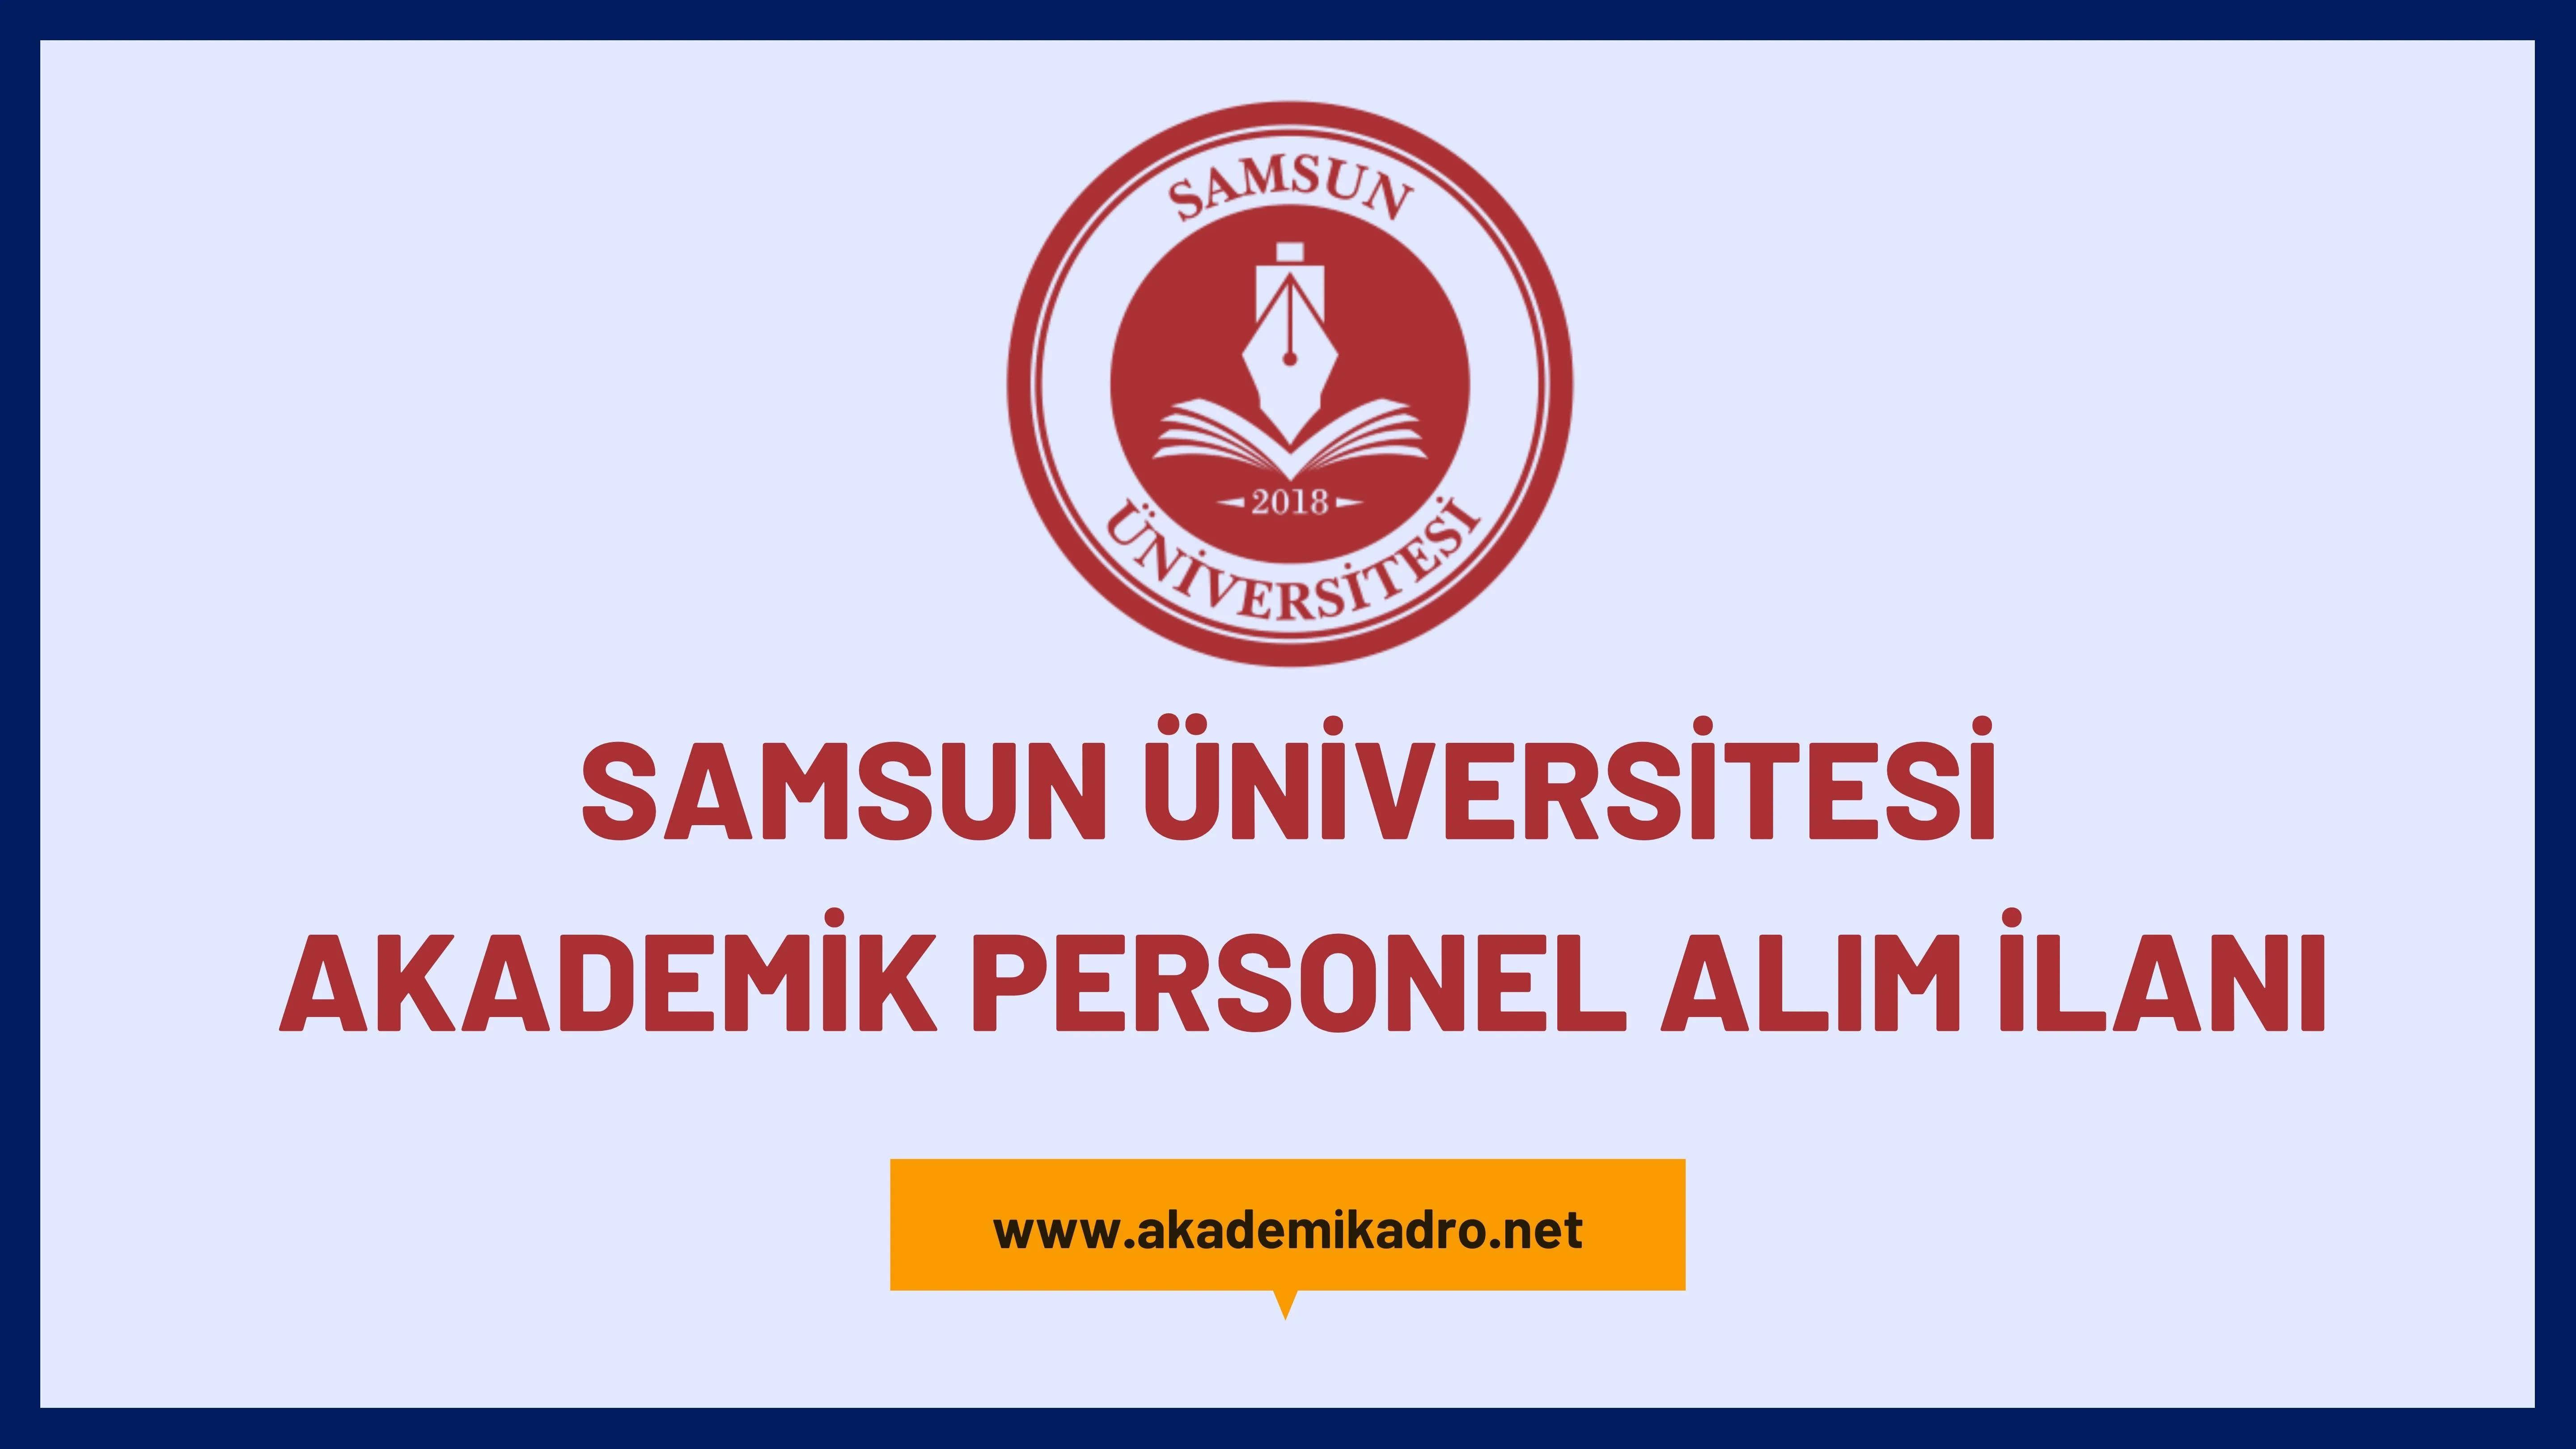 Samsun Üniversitesi birçok alandan 17 Akademik personel lacak.